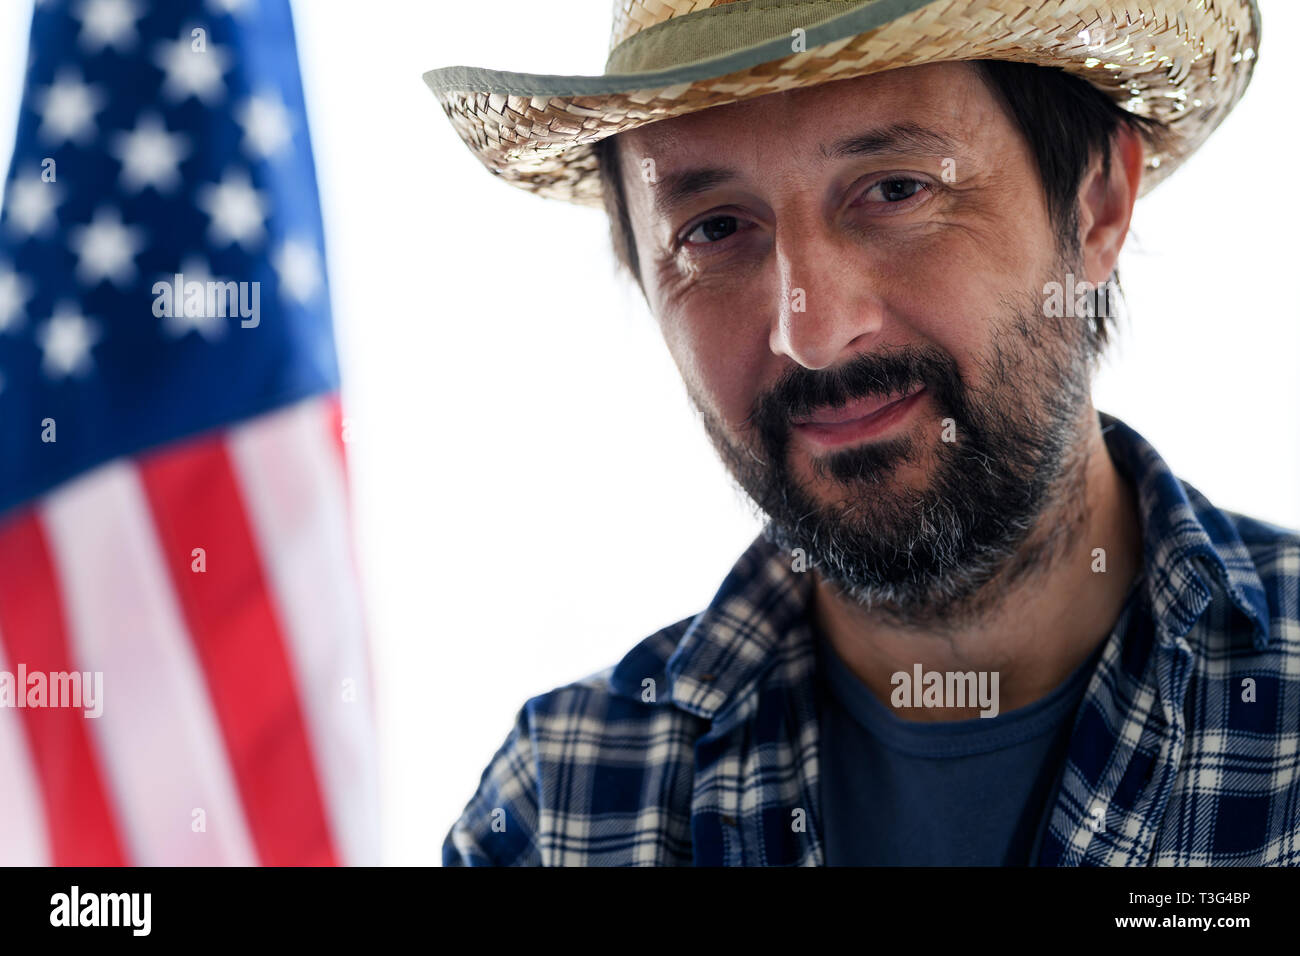 American farmer Smiling, portrait des mâles adultes de personne avec chapeau de paille et chemise à carreaux avec drapeau USA en arrière-plan Banque D'Images